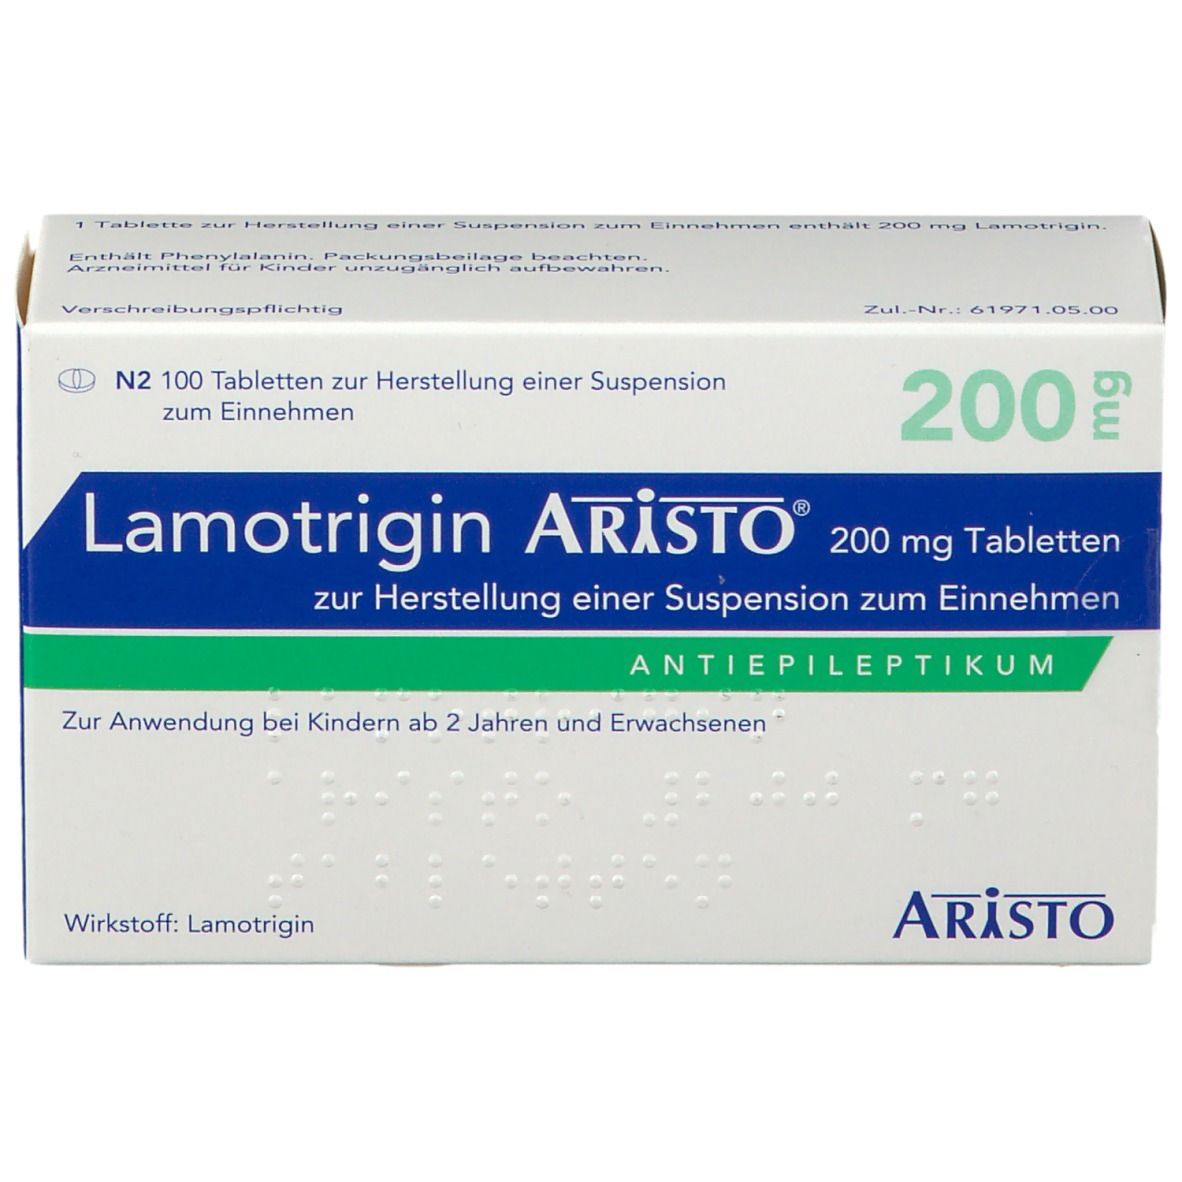 Lamotrigin Aristo® 200 mg